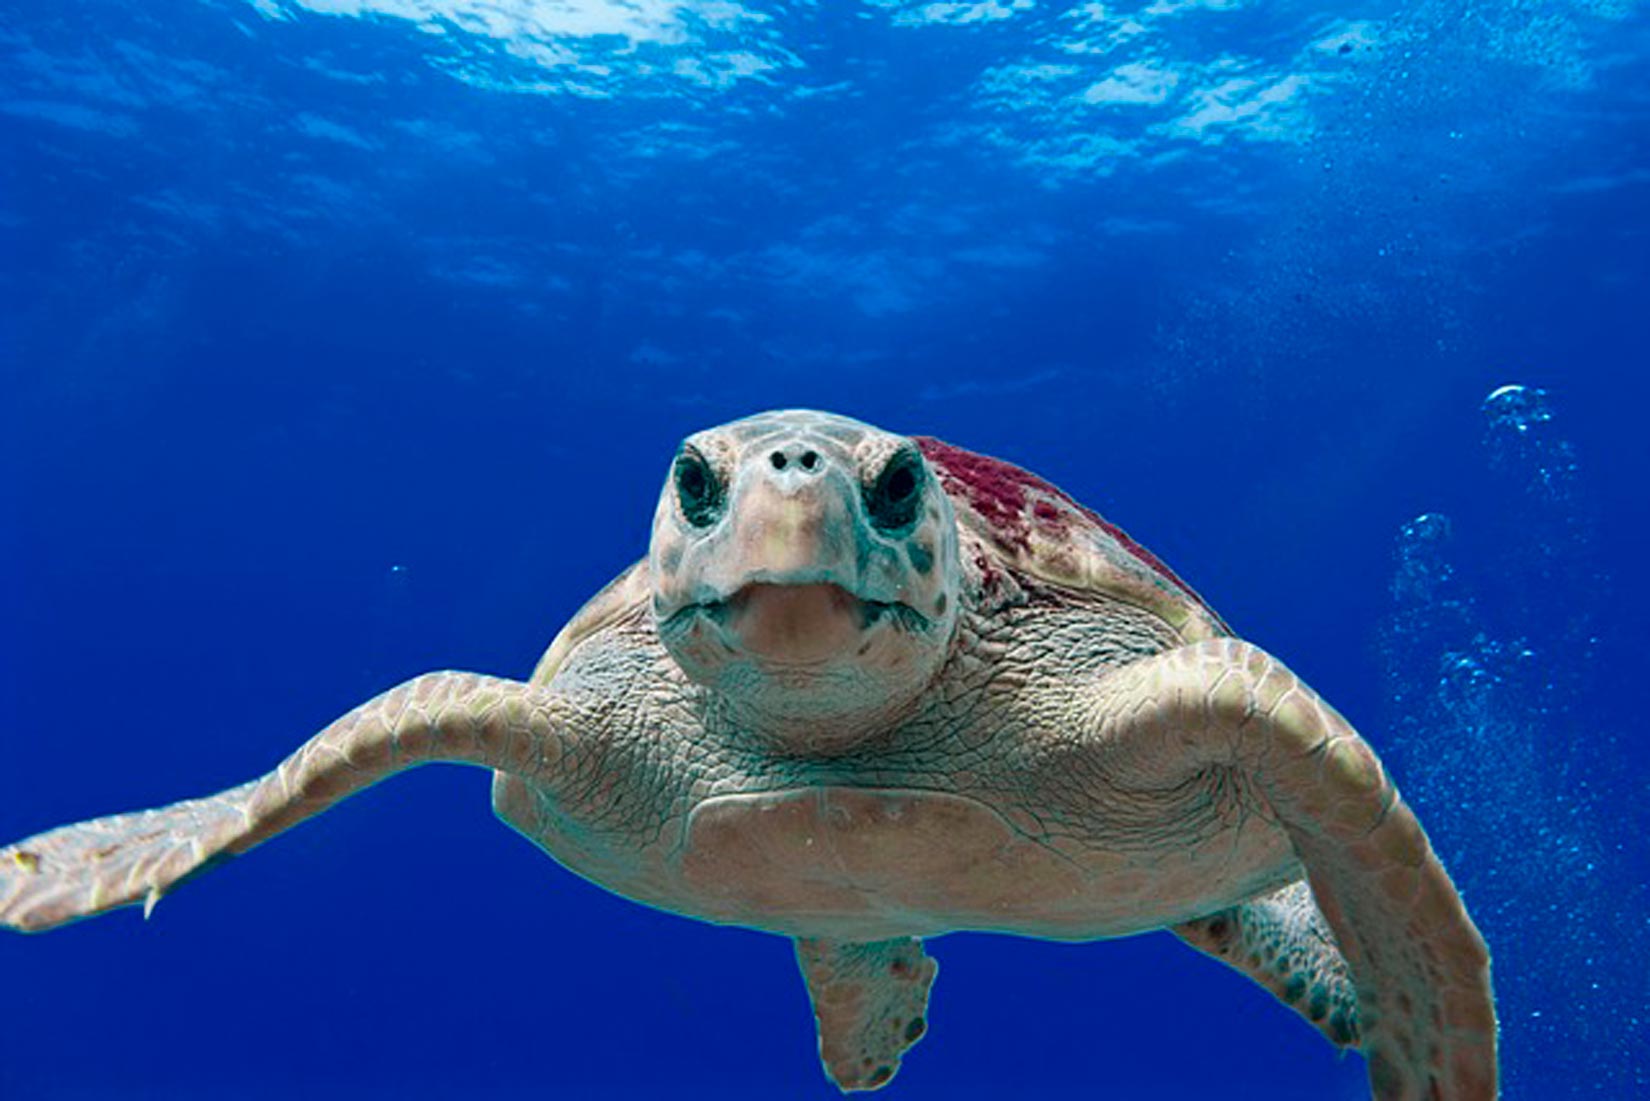 Slika prikazuje morsku kornjaču koja pliva u moru prema promatraču. Koža joj je gruba i ljuskasta.